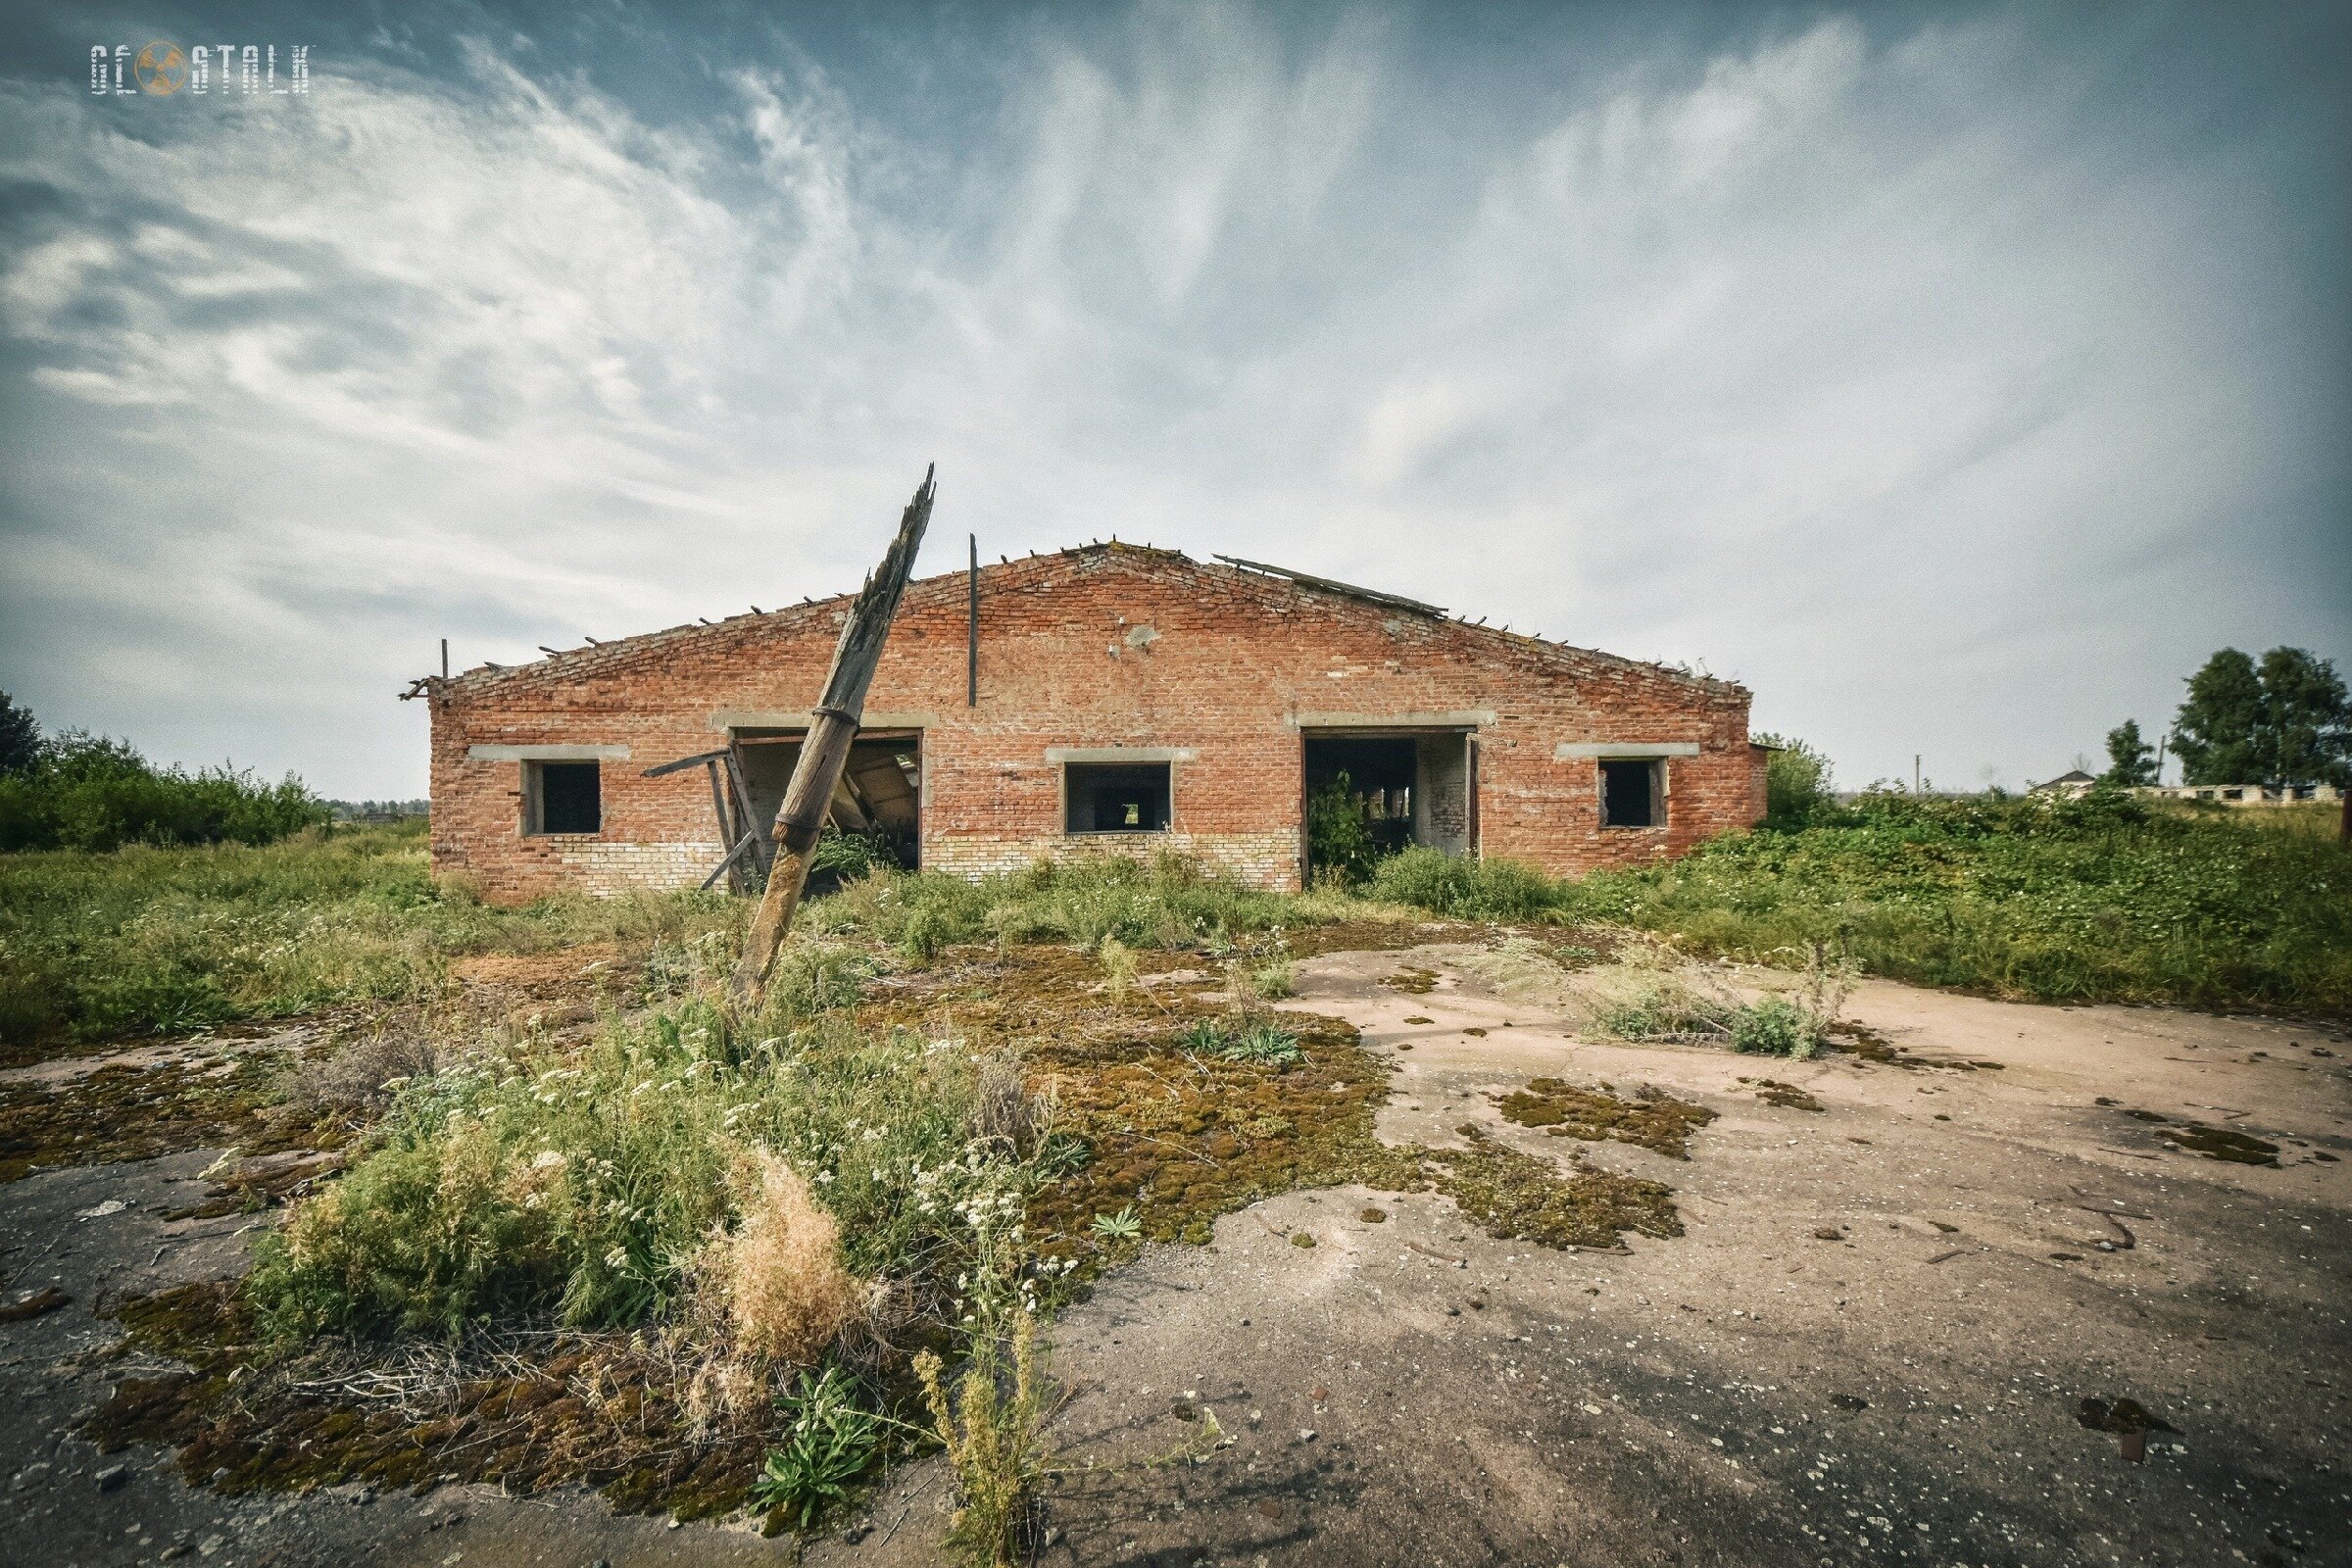 Чернобыль. Остатки зданий и заросшая техника в заброшенном колхозе 